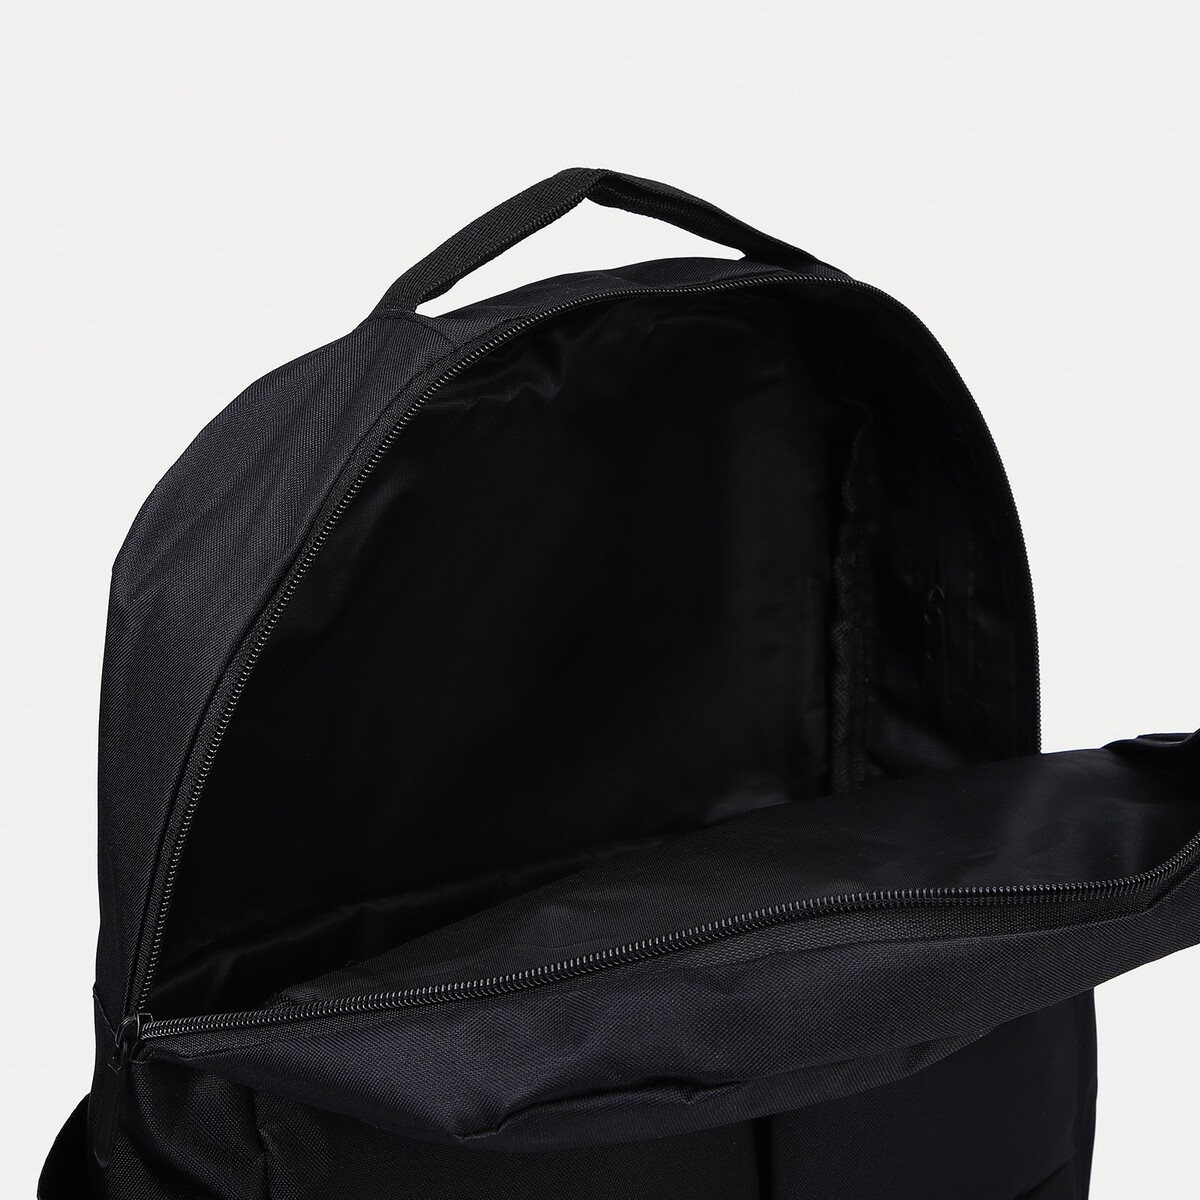 Рюкзак мега, 30*12*41 см, отд на молнии, usb, набор сумка, косметичка, черный No brand 02351197 - фото 5